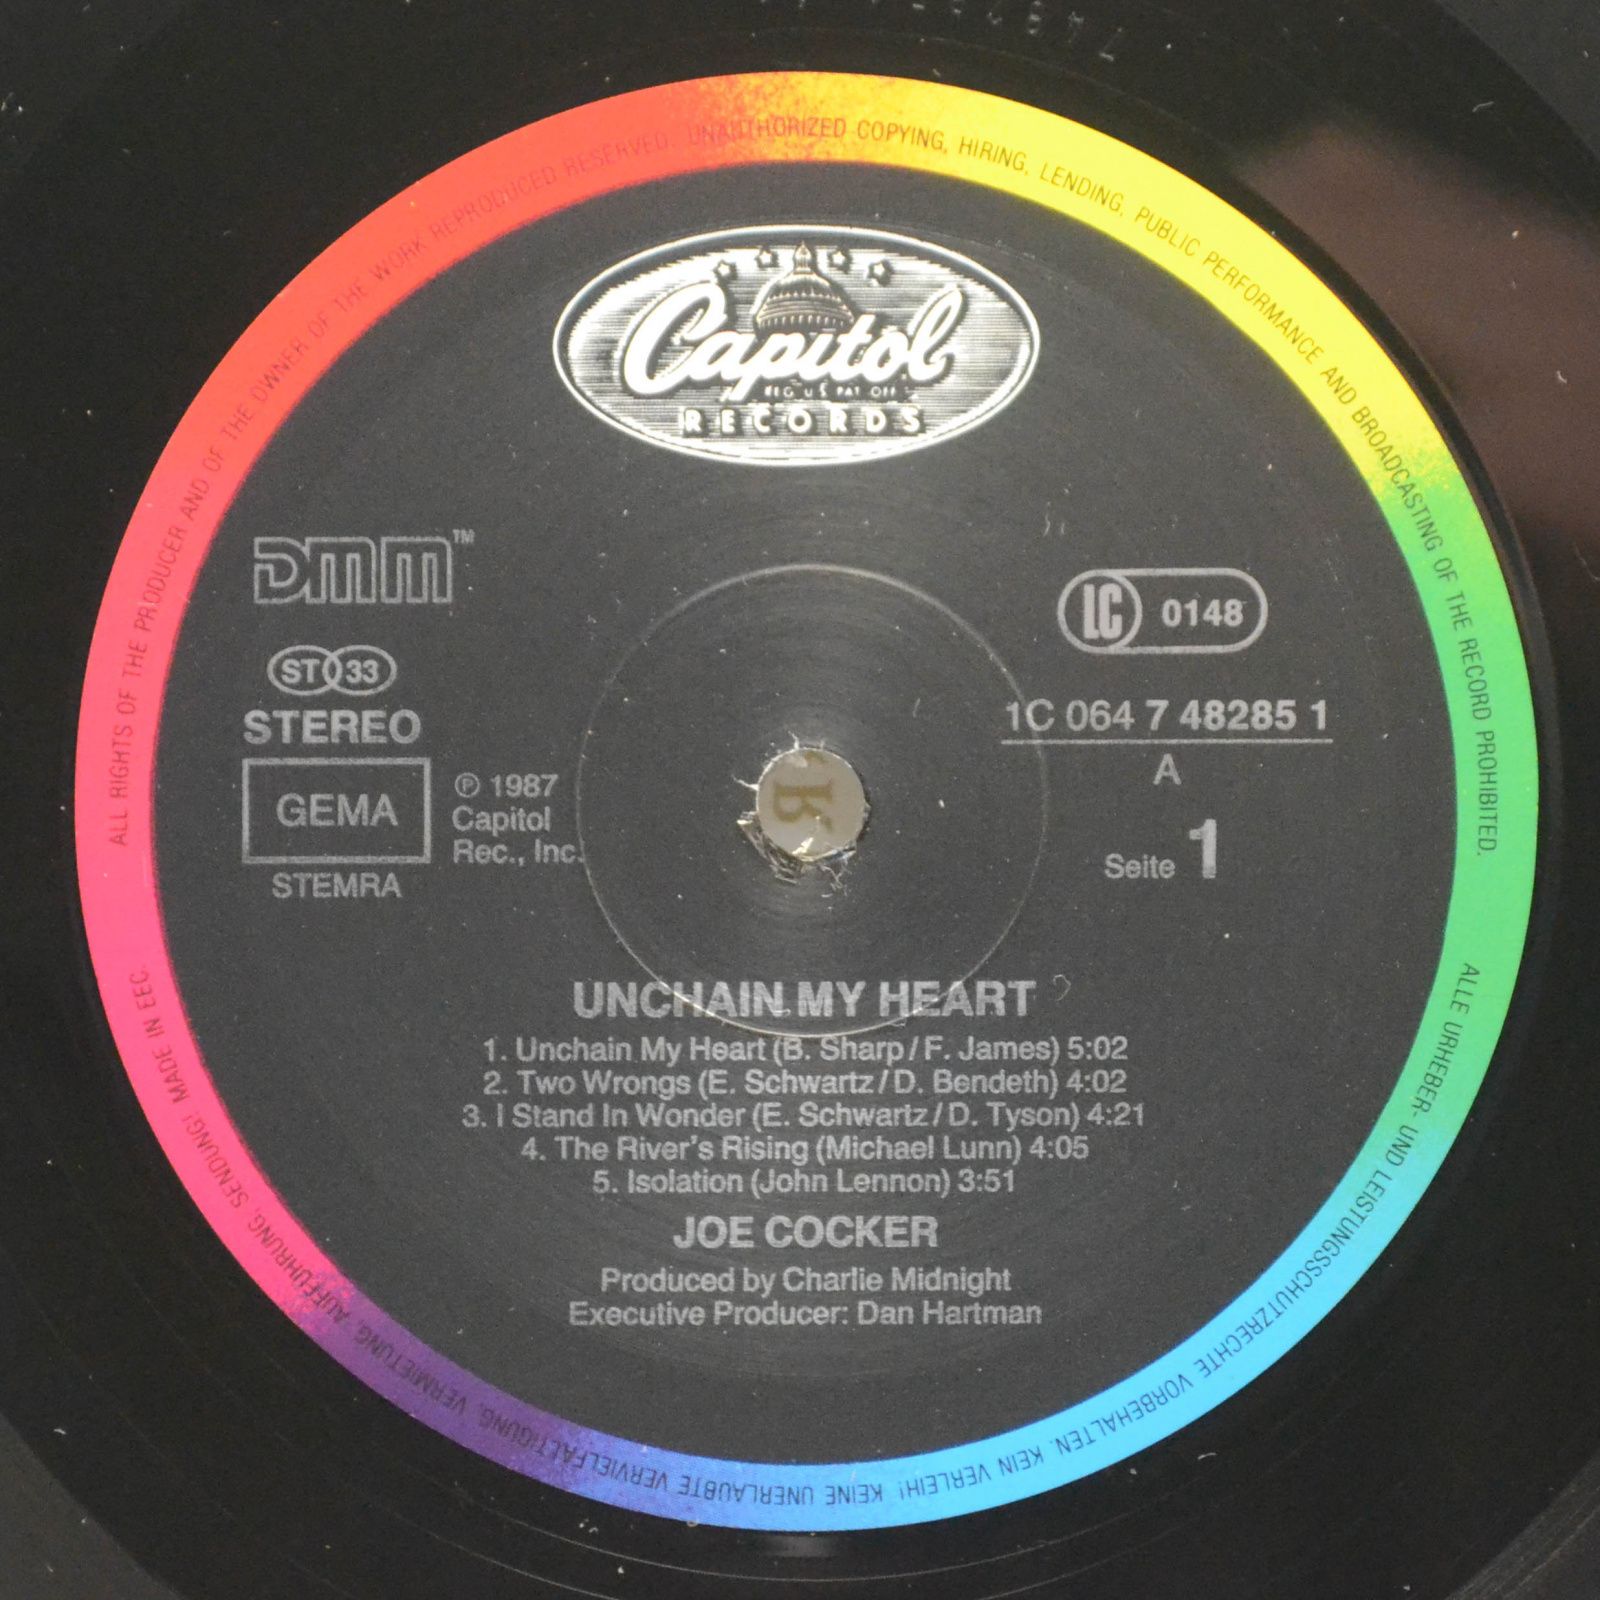 Joe Cocker — Unchain My Heart, 1987